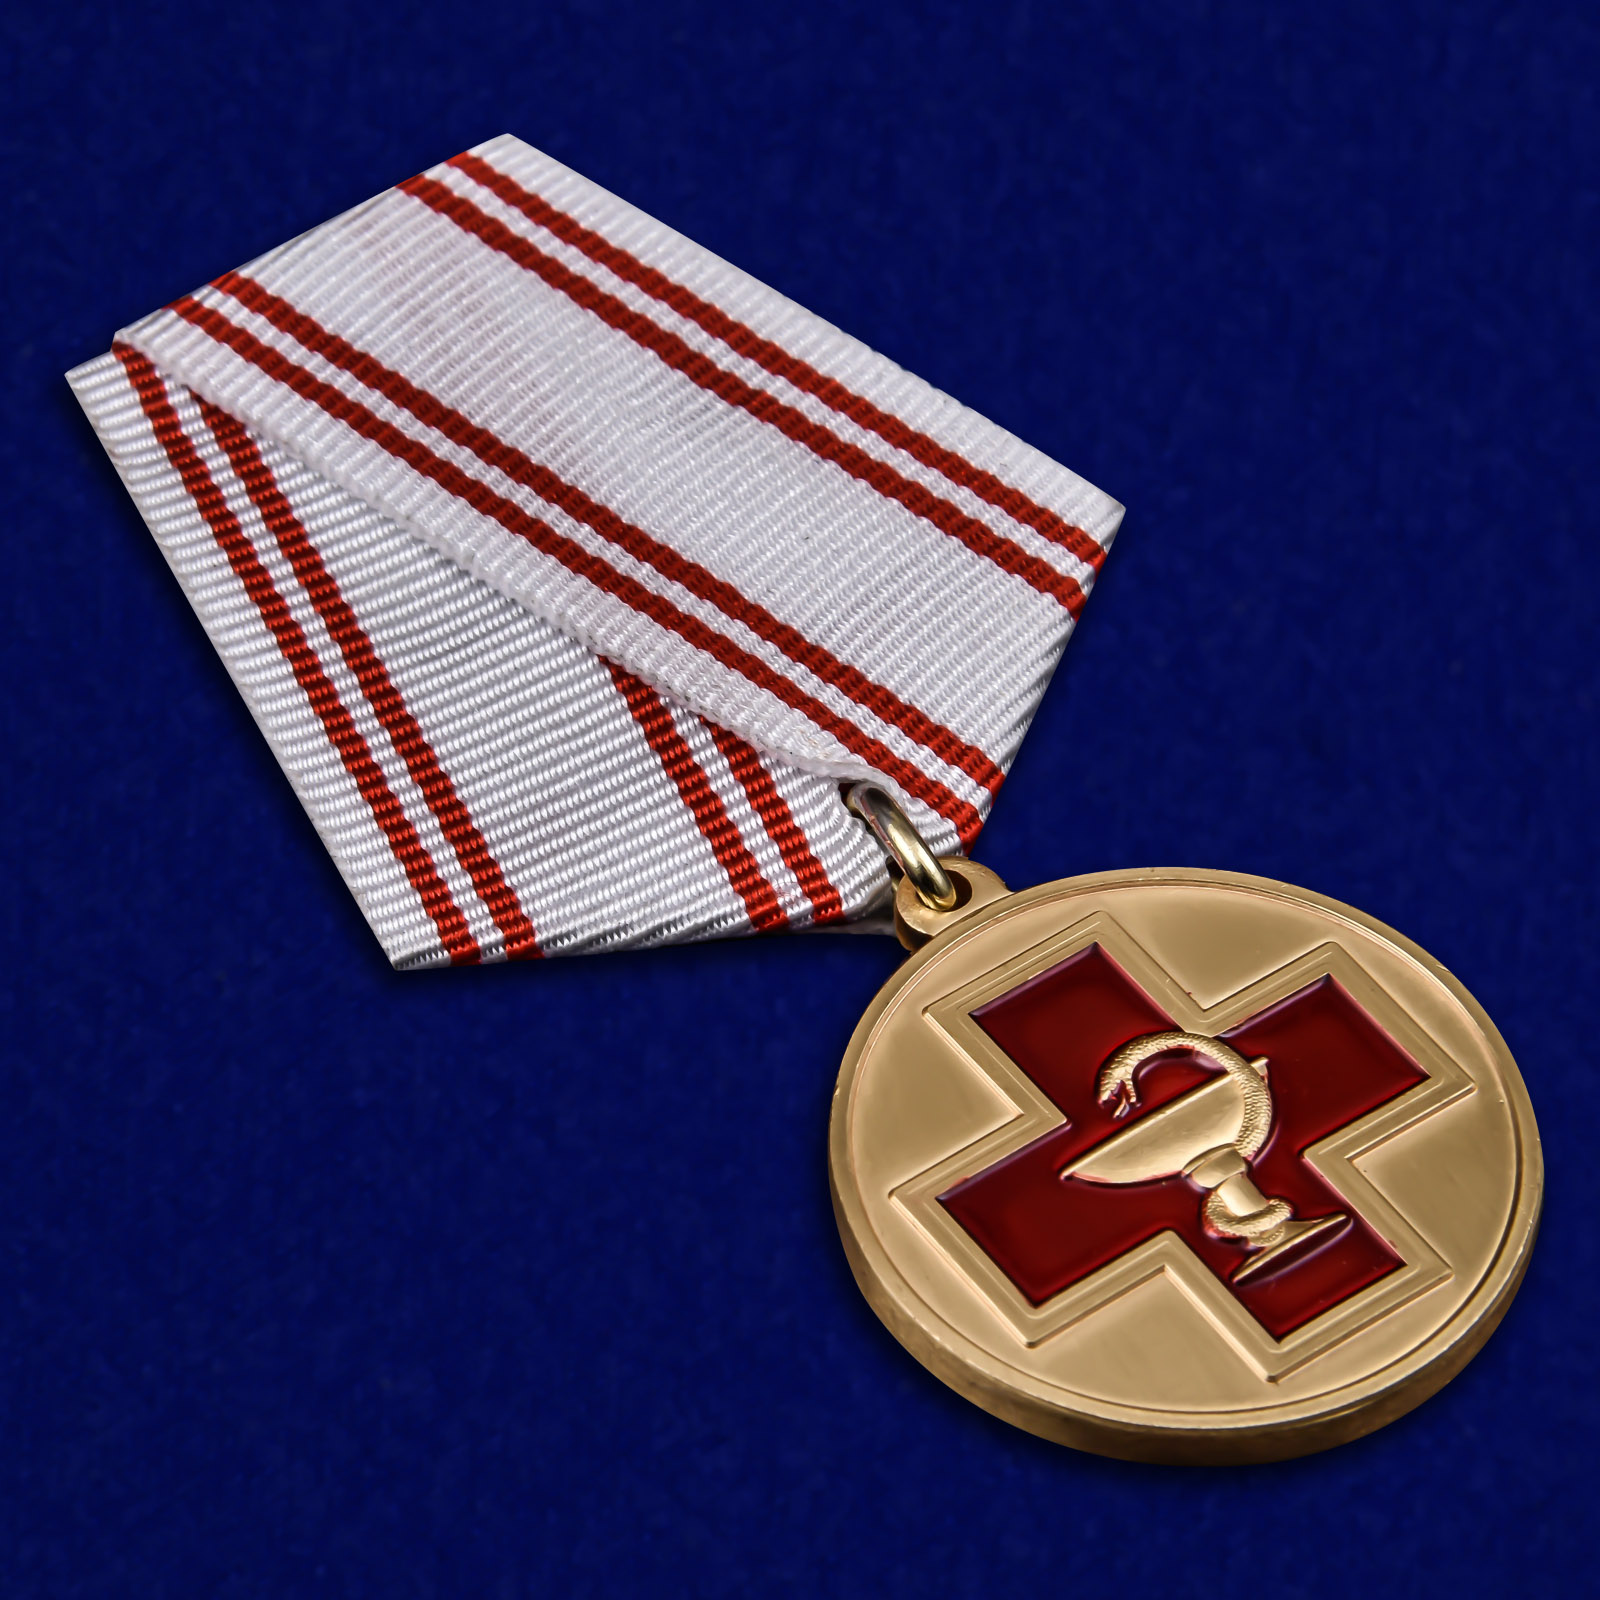 Латунная медаль "За заслуги в медицине" 